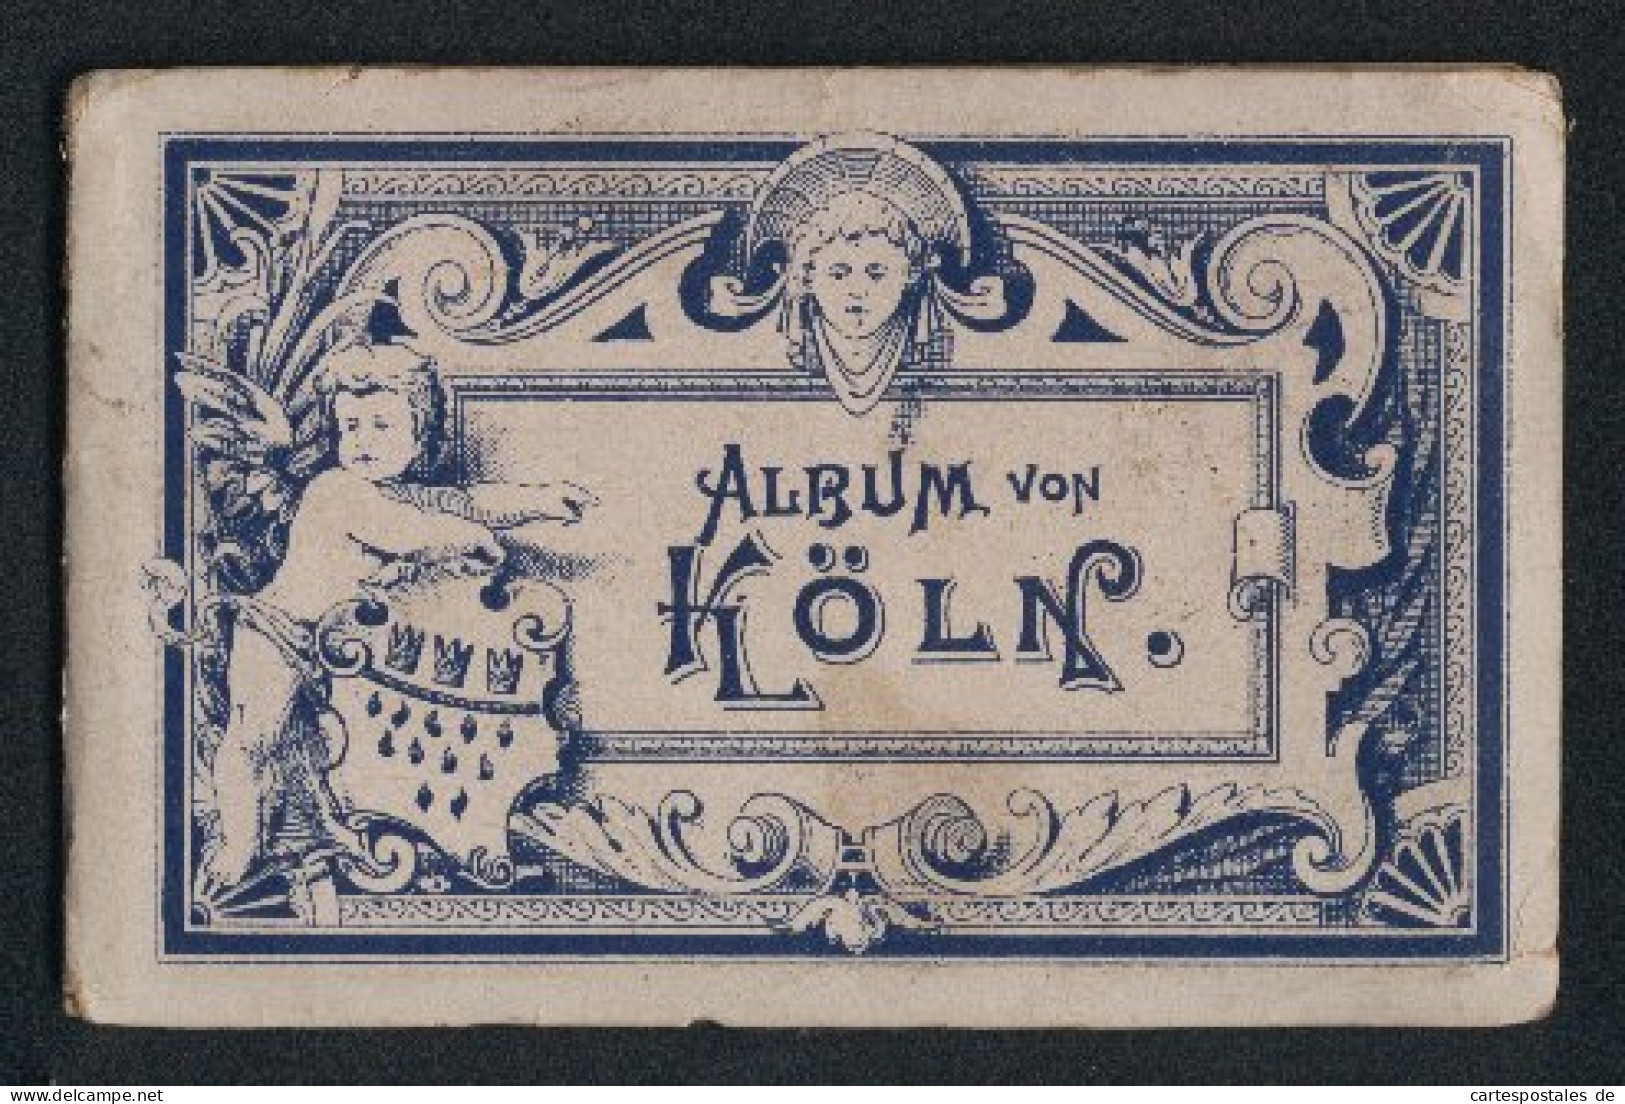 Leporello-Album Köln Mit 12 Lithographie-Ansichten, Bahnhof, Flora, Hohenzollerring, Museum Walraff-Richartz, Dom, Po  - Lithographien